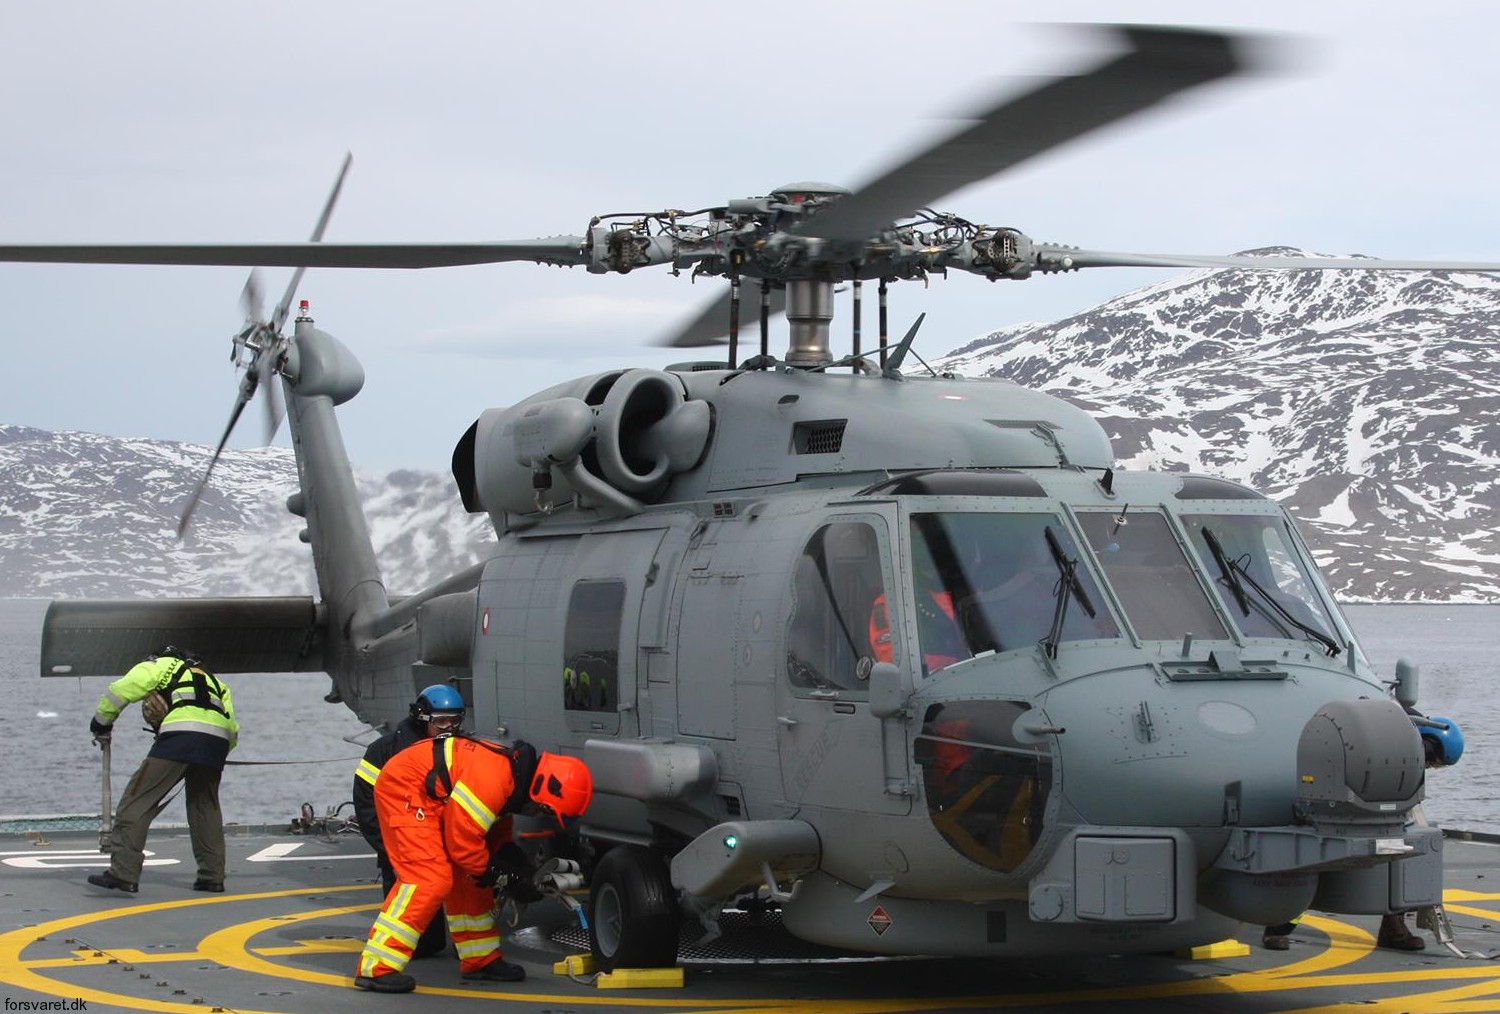 mh-60r seahawk royal danish navy air force flyvevåbnet kongelige danske marine sikorsky helicopter 723 eskadrille squadron karup 37